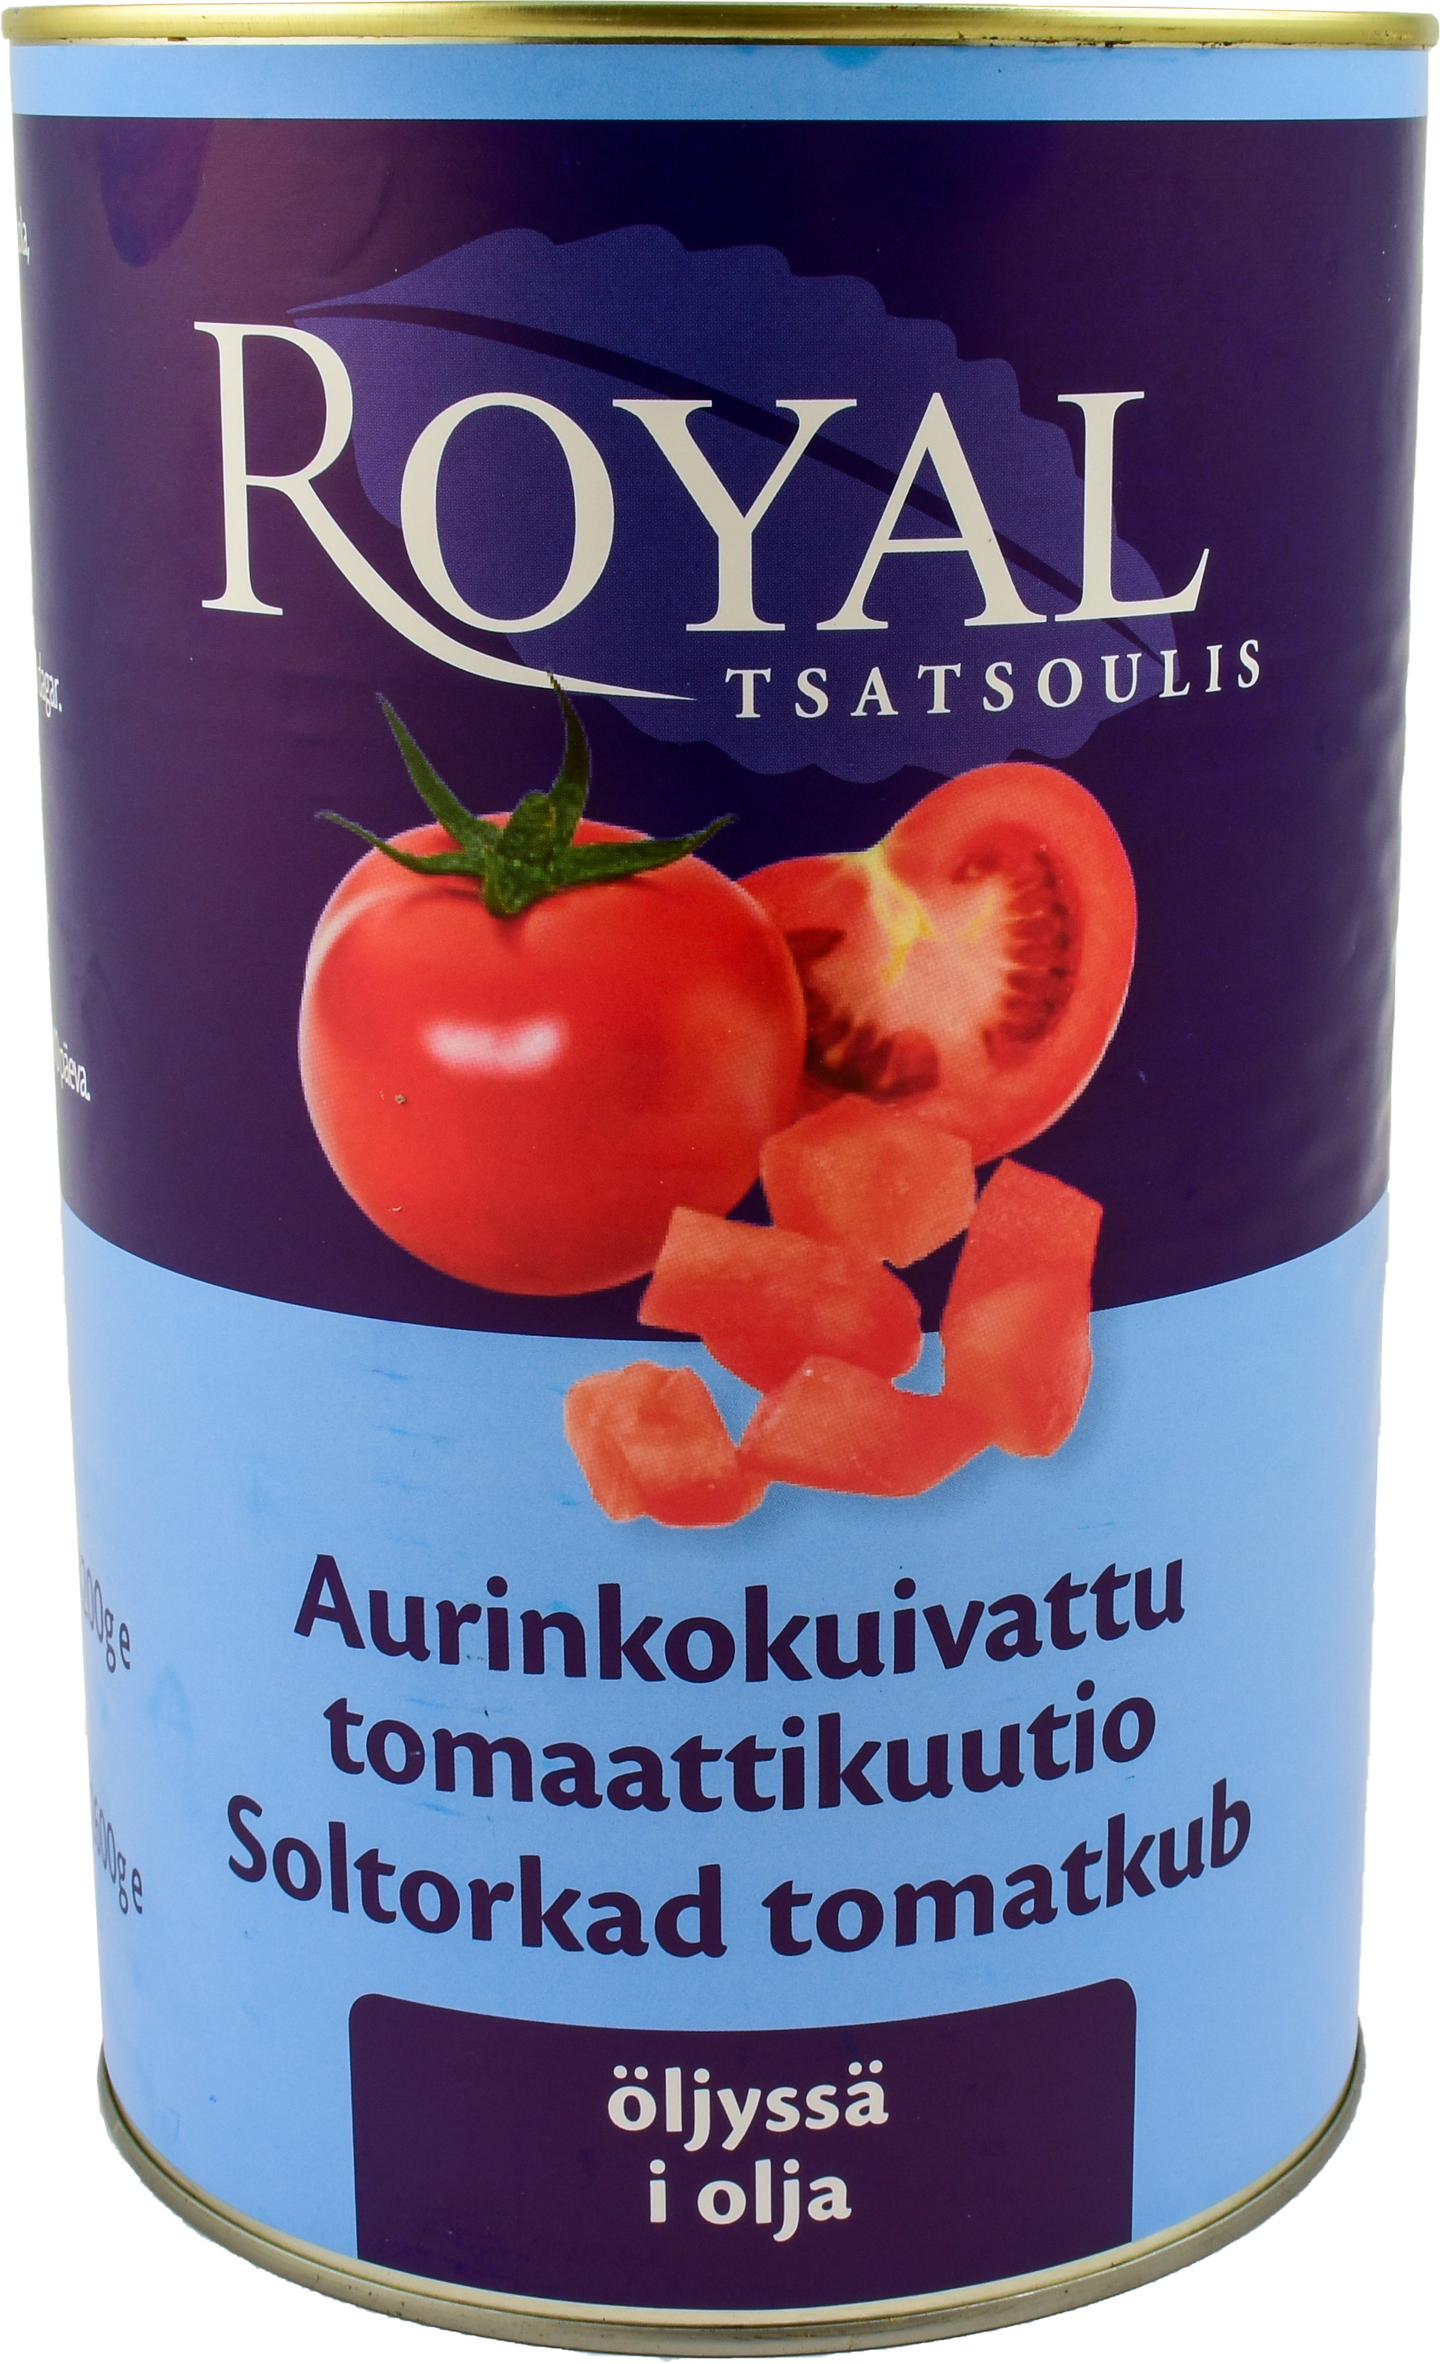 Royal aurinkokuivattu tomaattikuutio öljyssä 4,2/2,6 kg